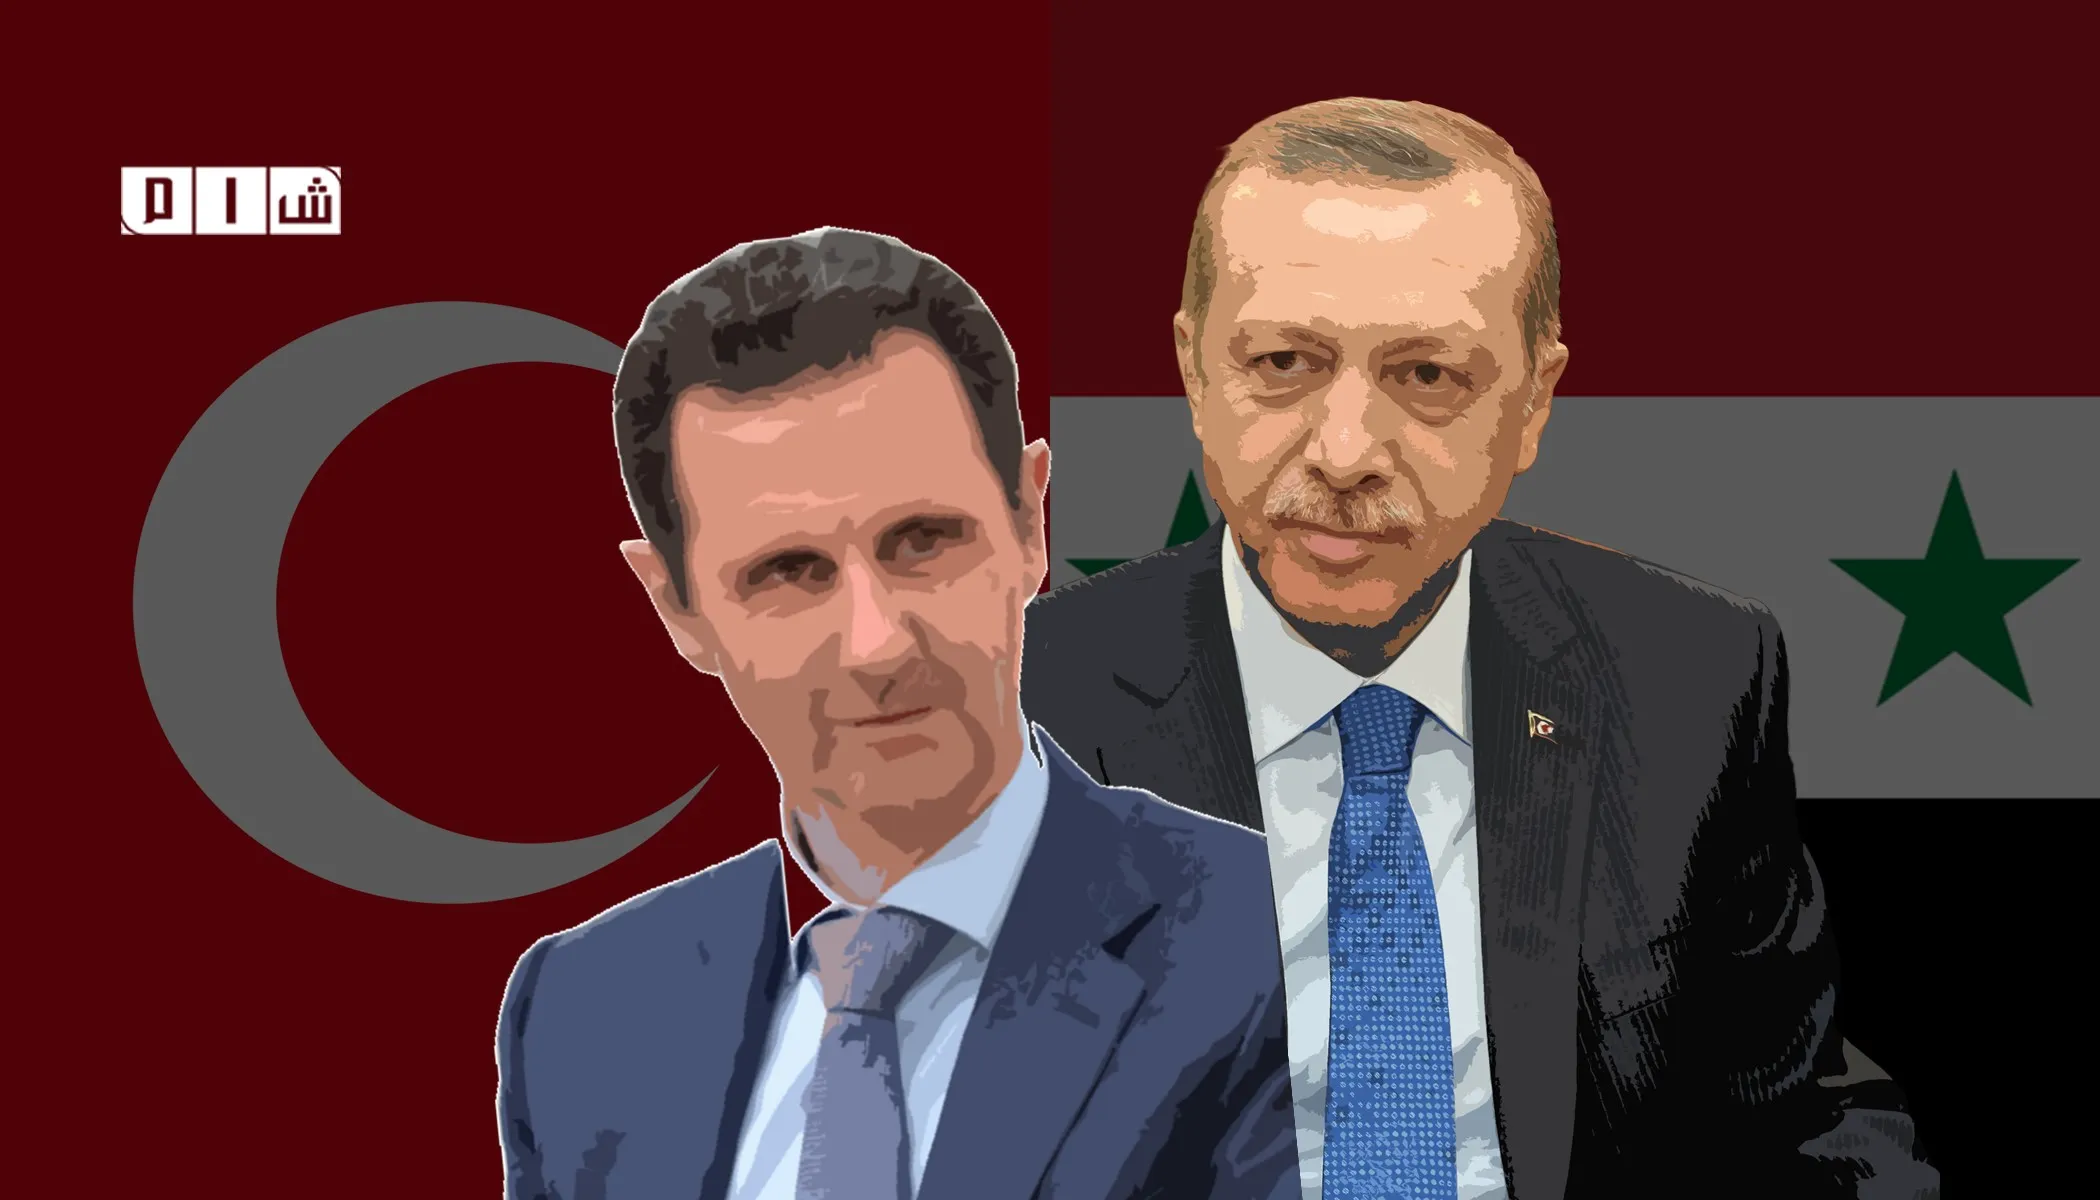 كبير مستشاري أردوغان: إمكانية عقد اجتماع مع "بشار الأسد" مستبعدة في المستقبل القريب